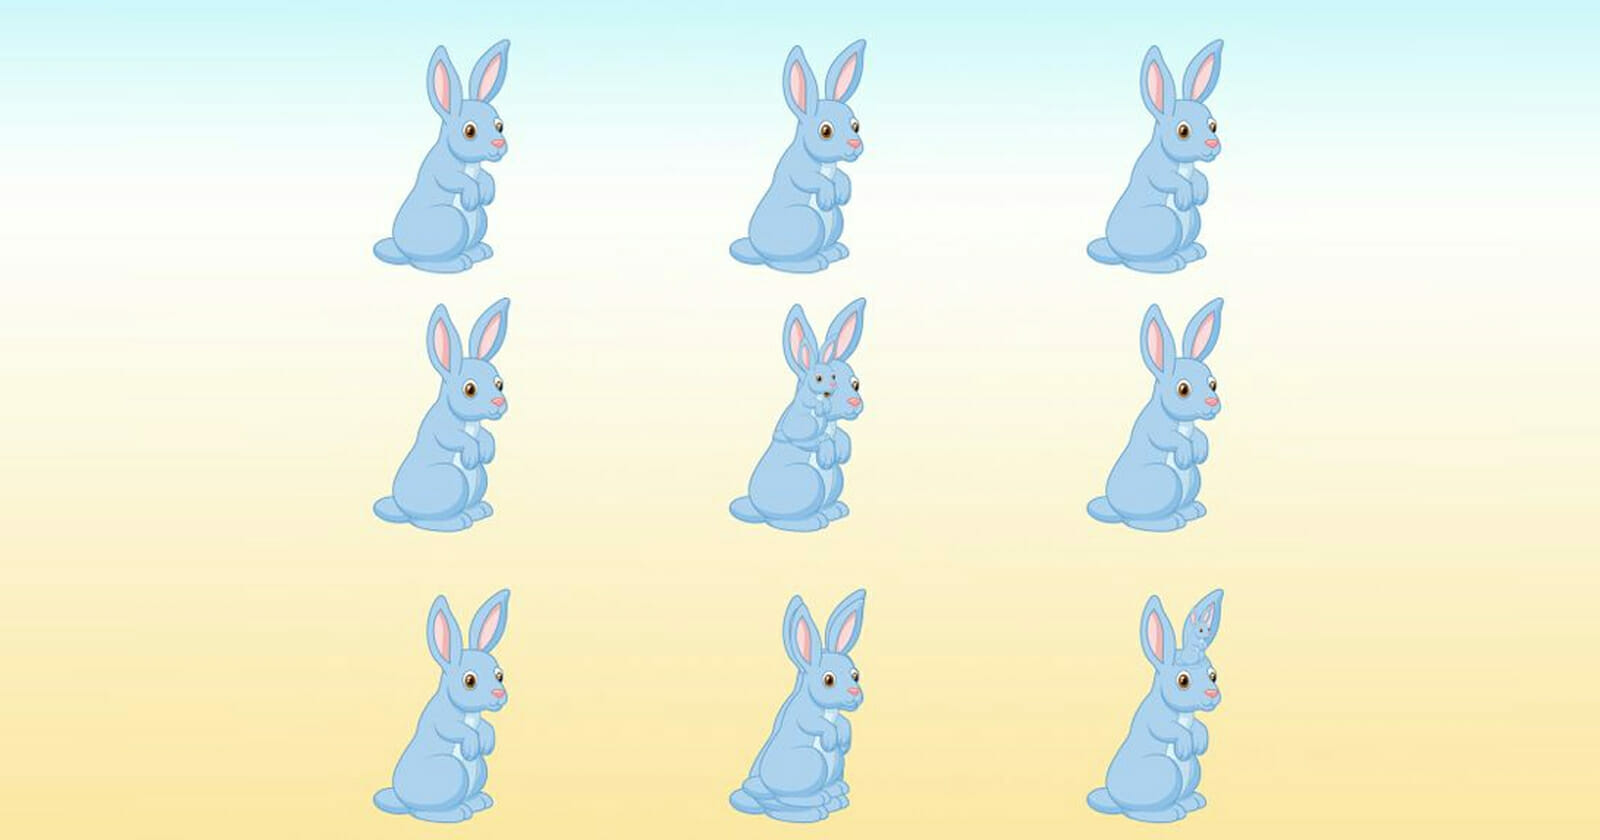 اكتشف عدد الأرانب الحقيقي في الصورة watanserb.com